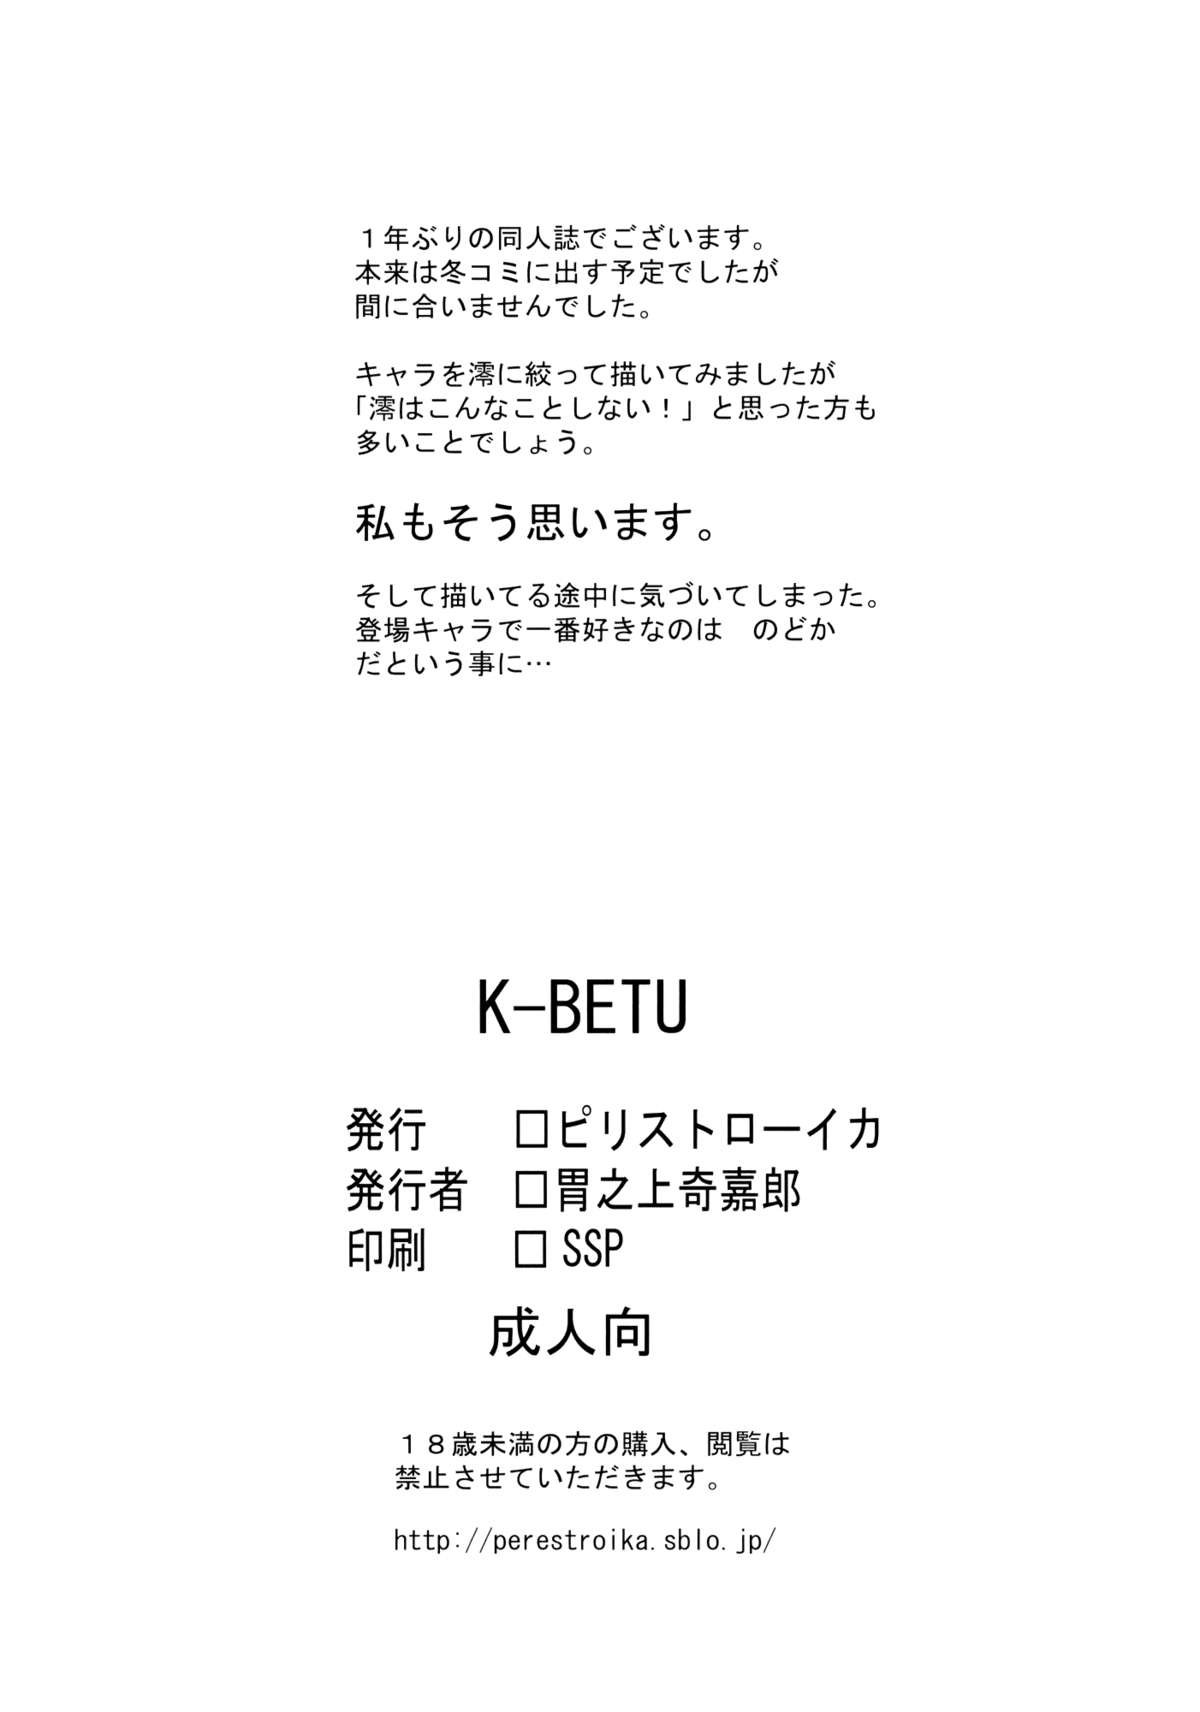 K-BETU (K-On) - Inoue Kiyoshirou - 19